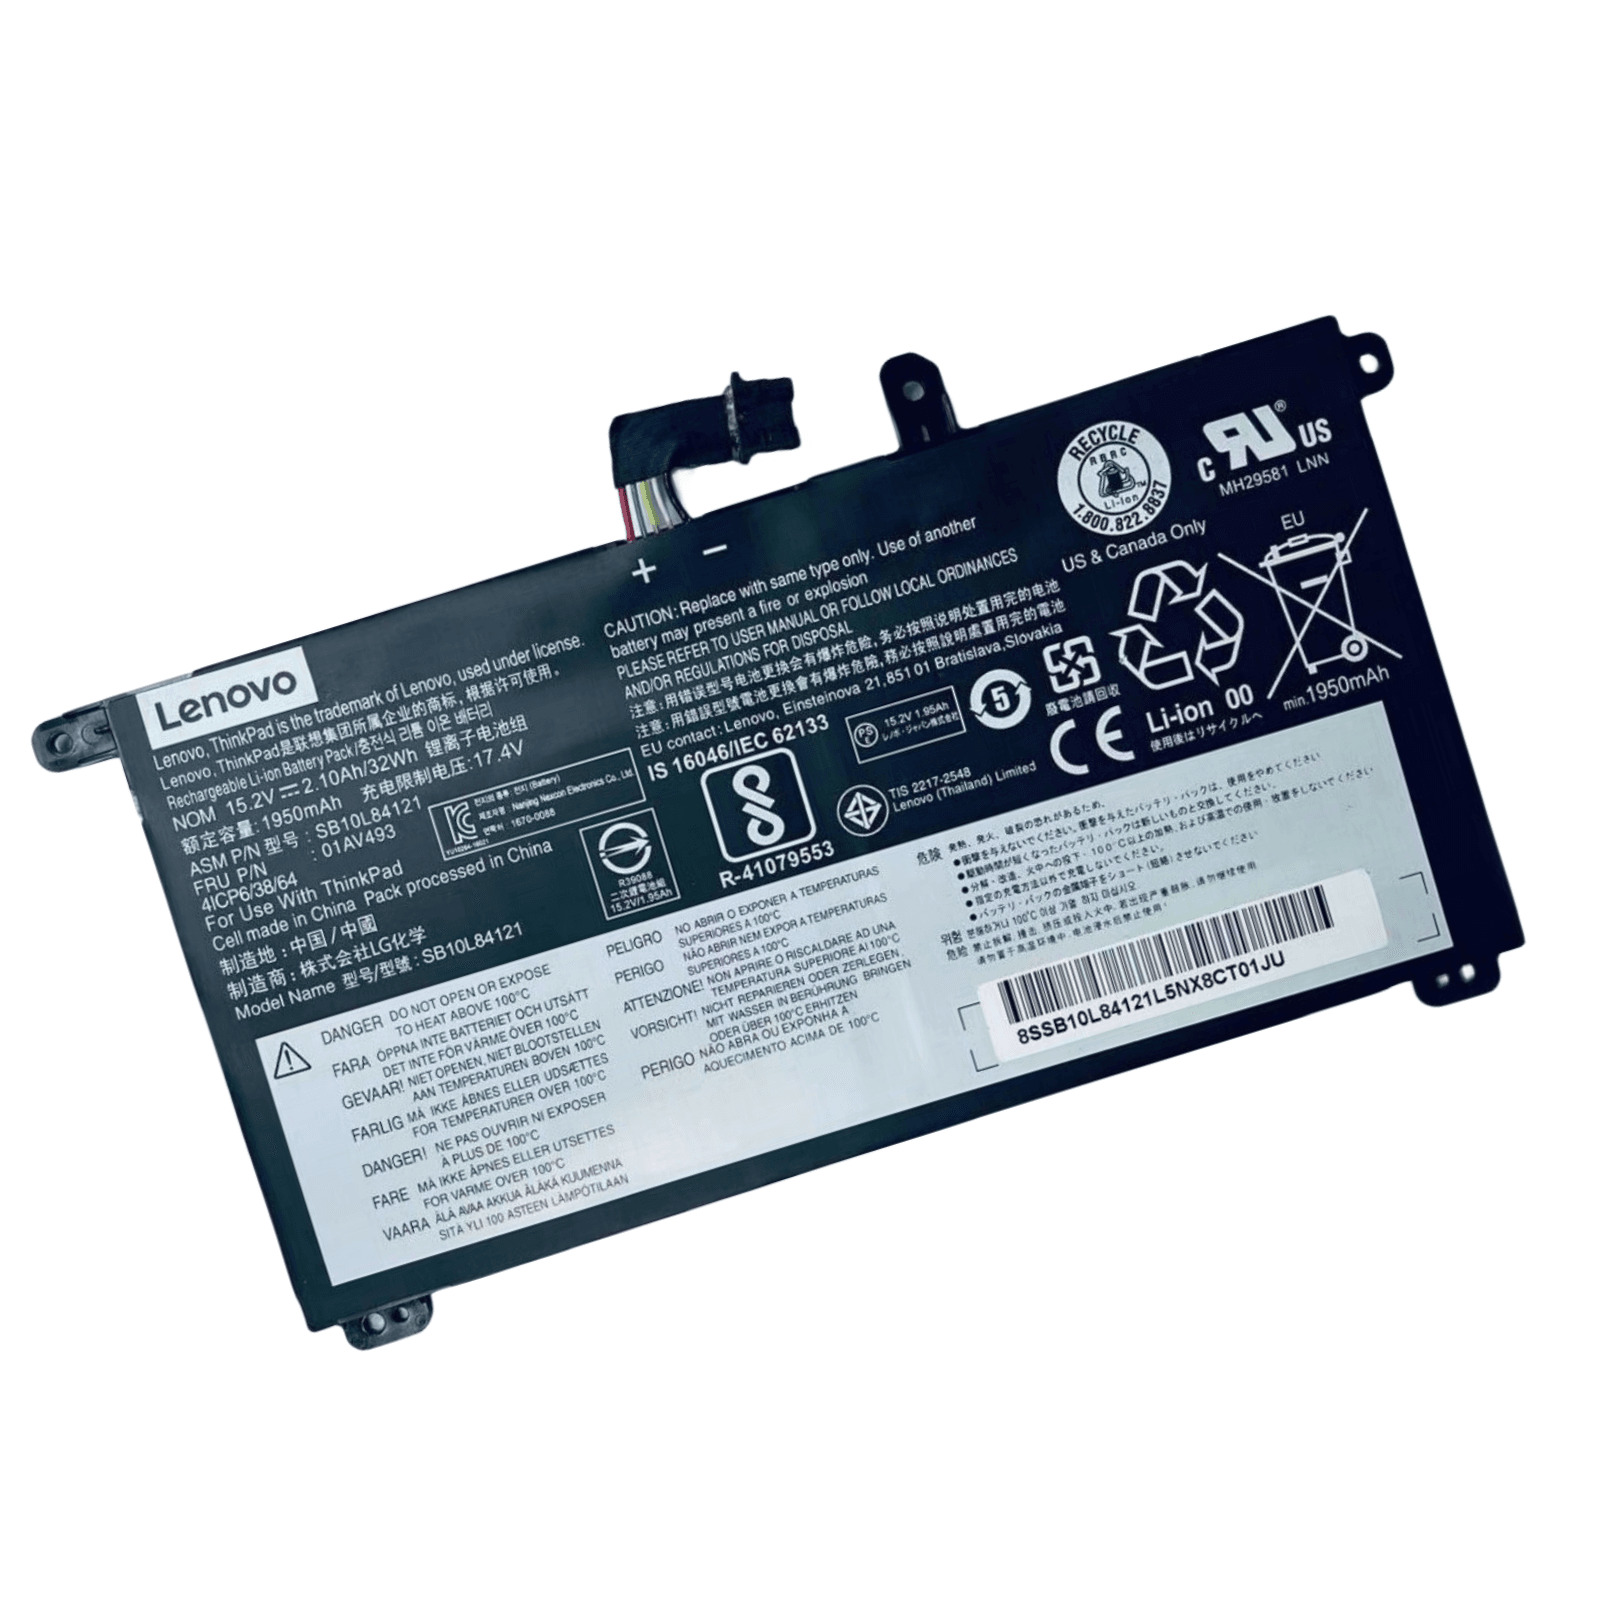 Original 01AV493 Battery for Lenovo ThinkPad T570 T580 P51s P52s 00UR891 00UR892